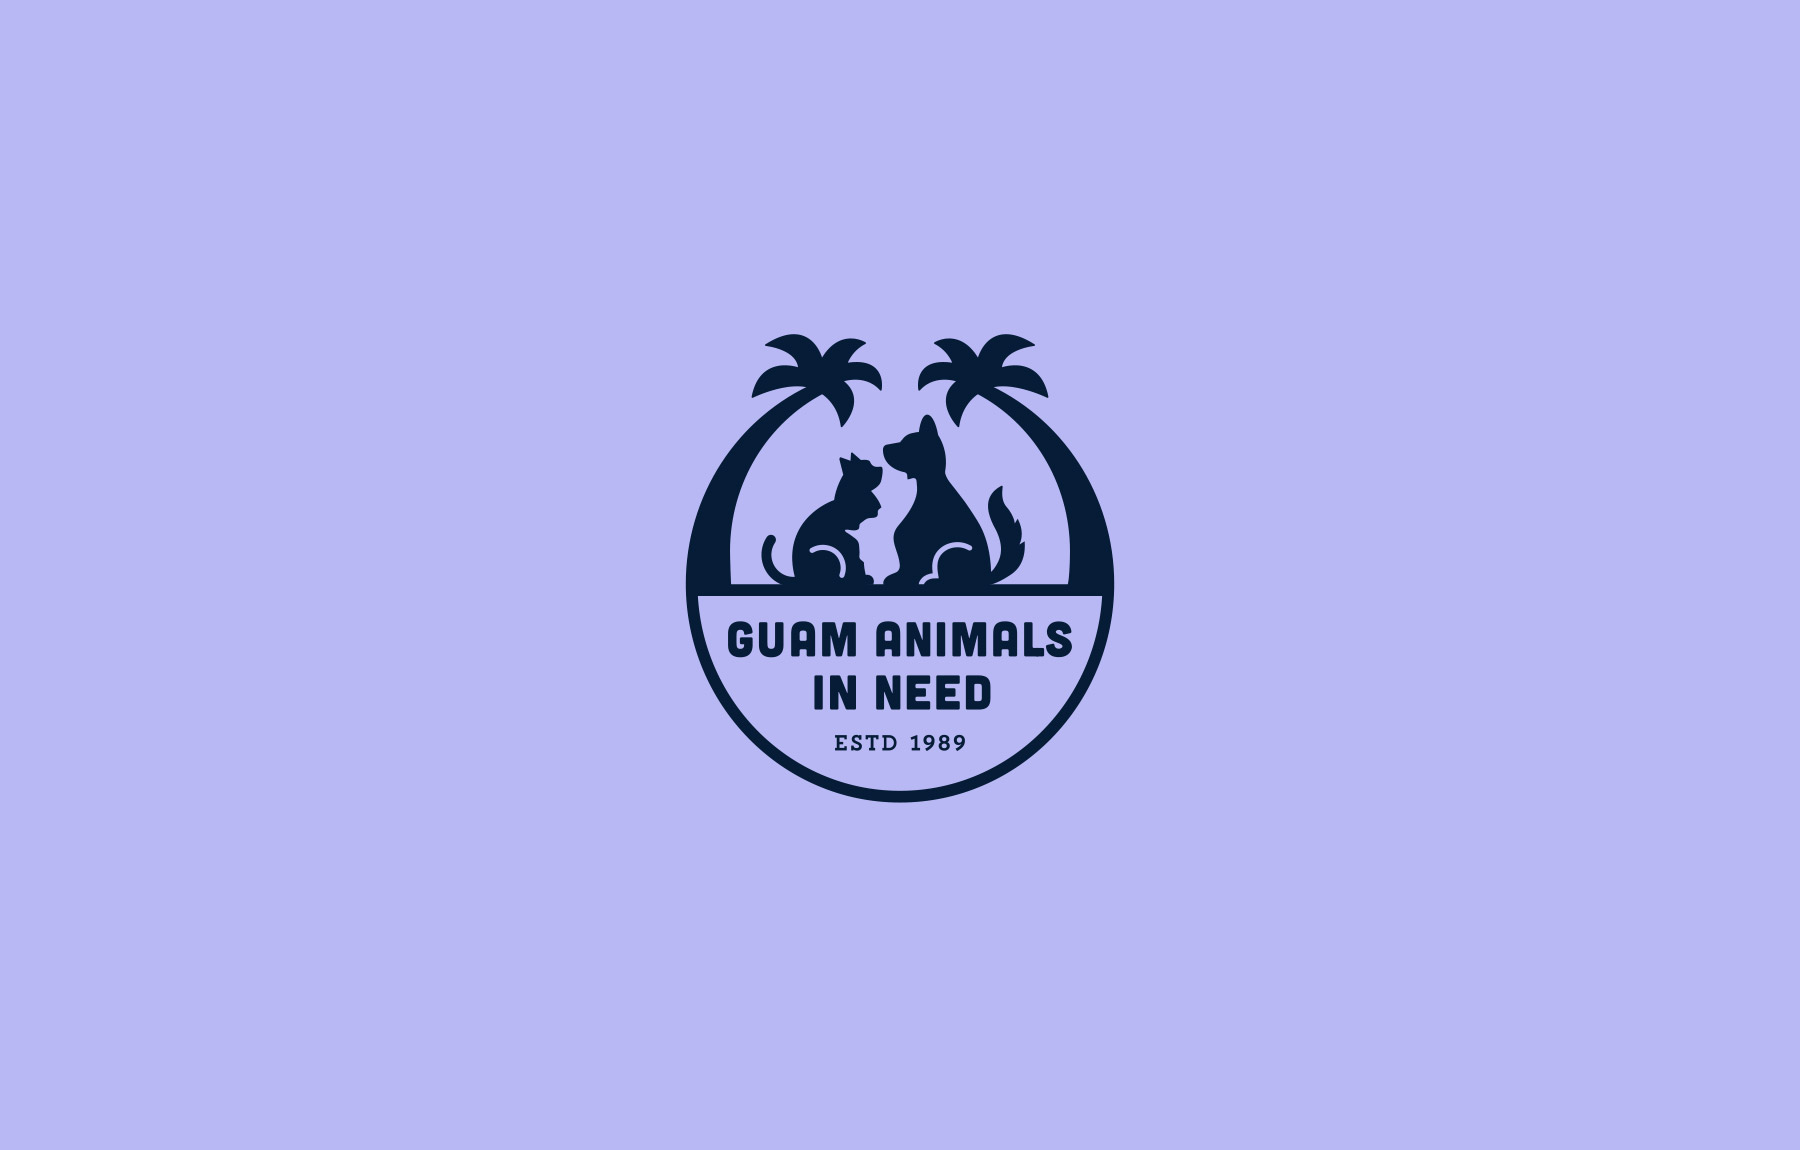 Guam Animals In Need company logo